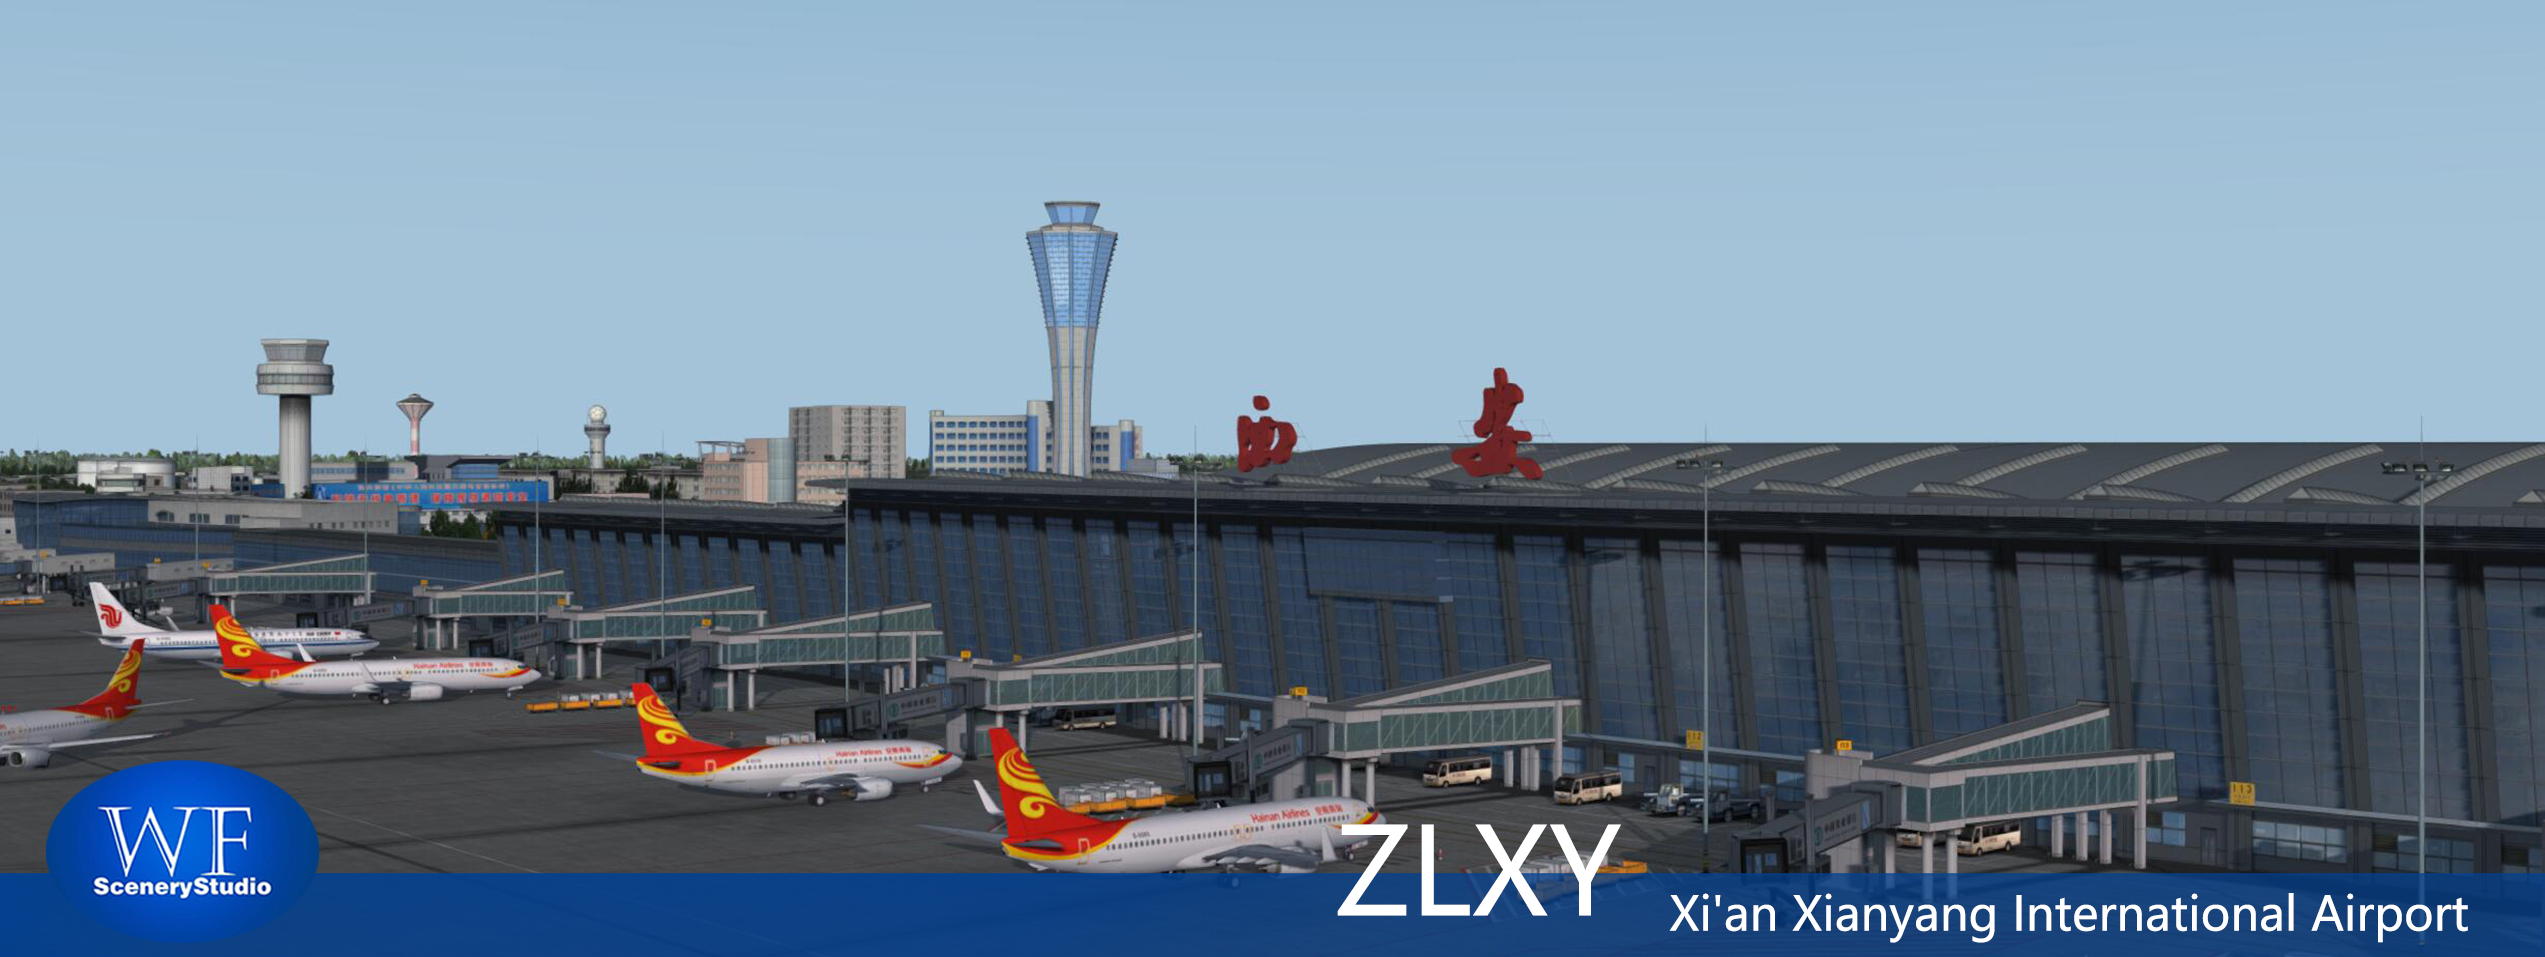 西安咸阳国际机场FSX和P3DV3 版本发布-3498 